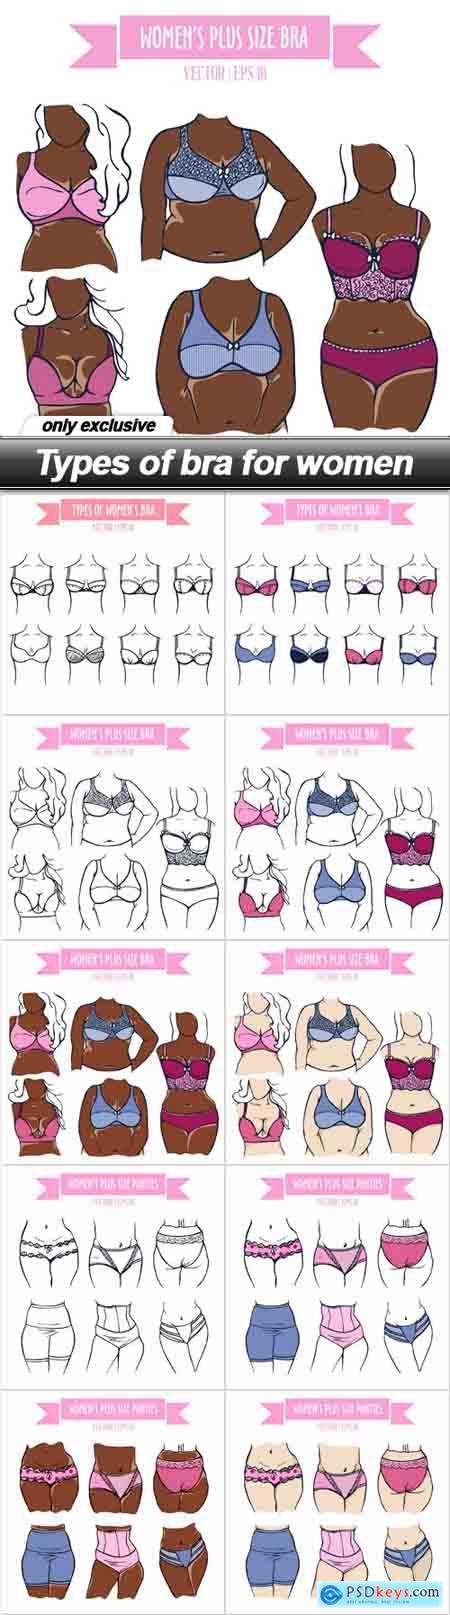 Types of bra for women - 10 EPS